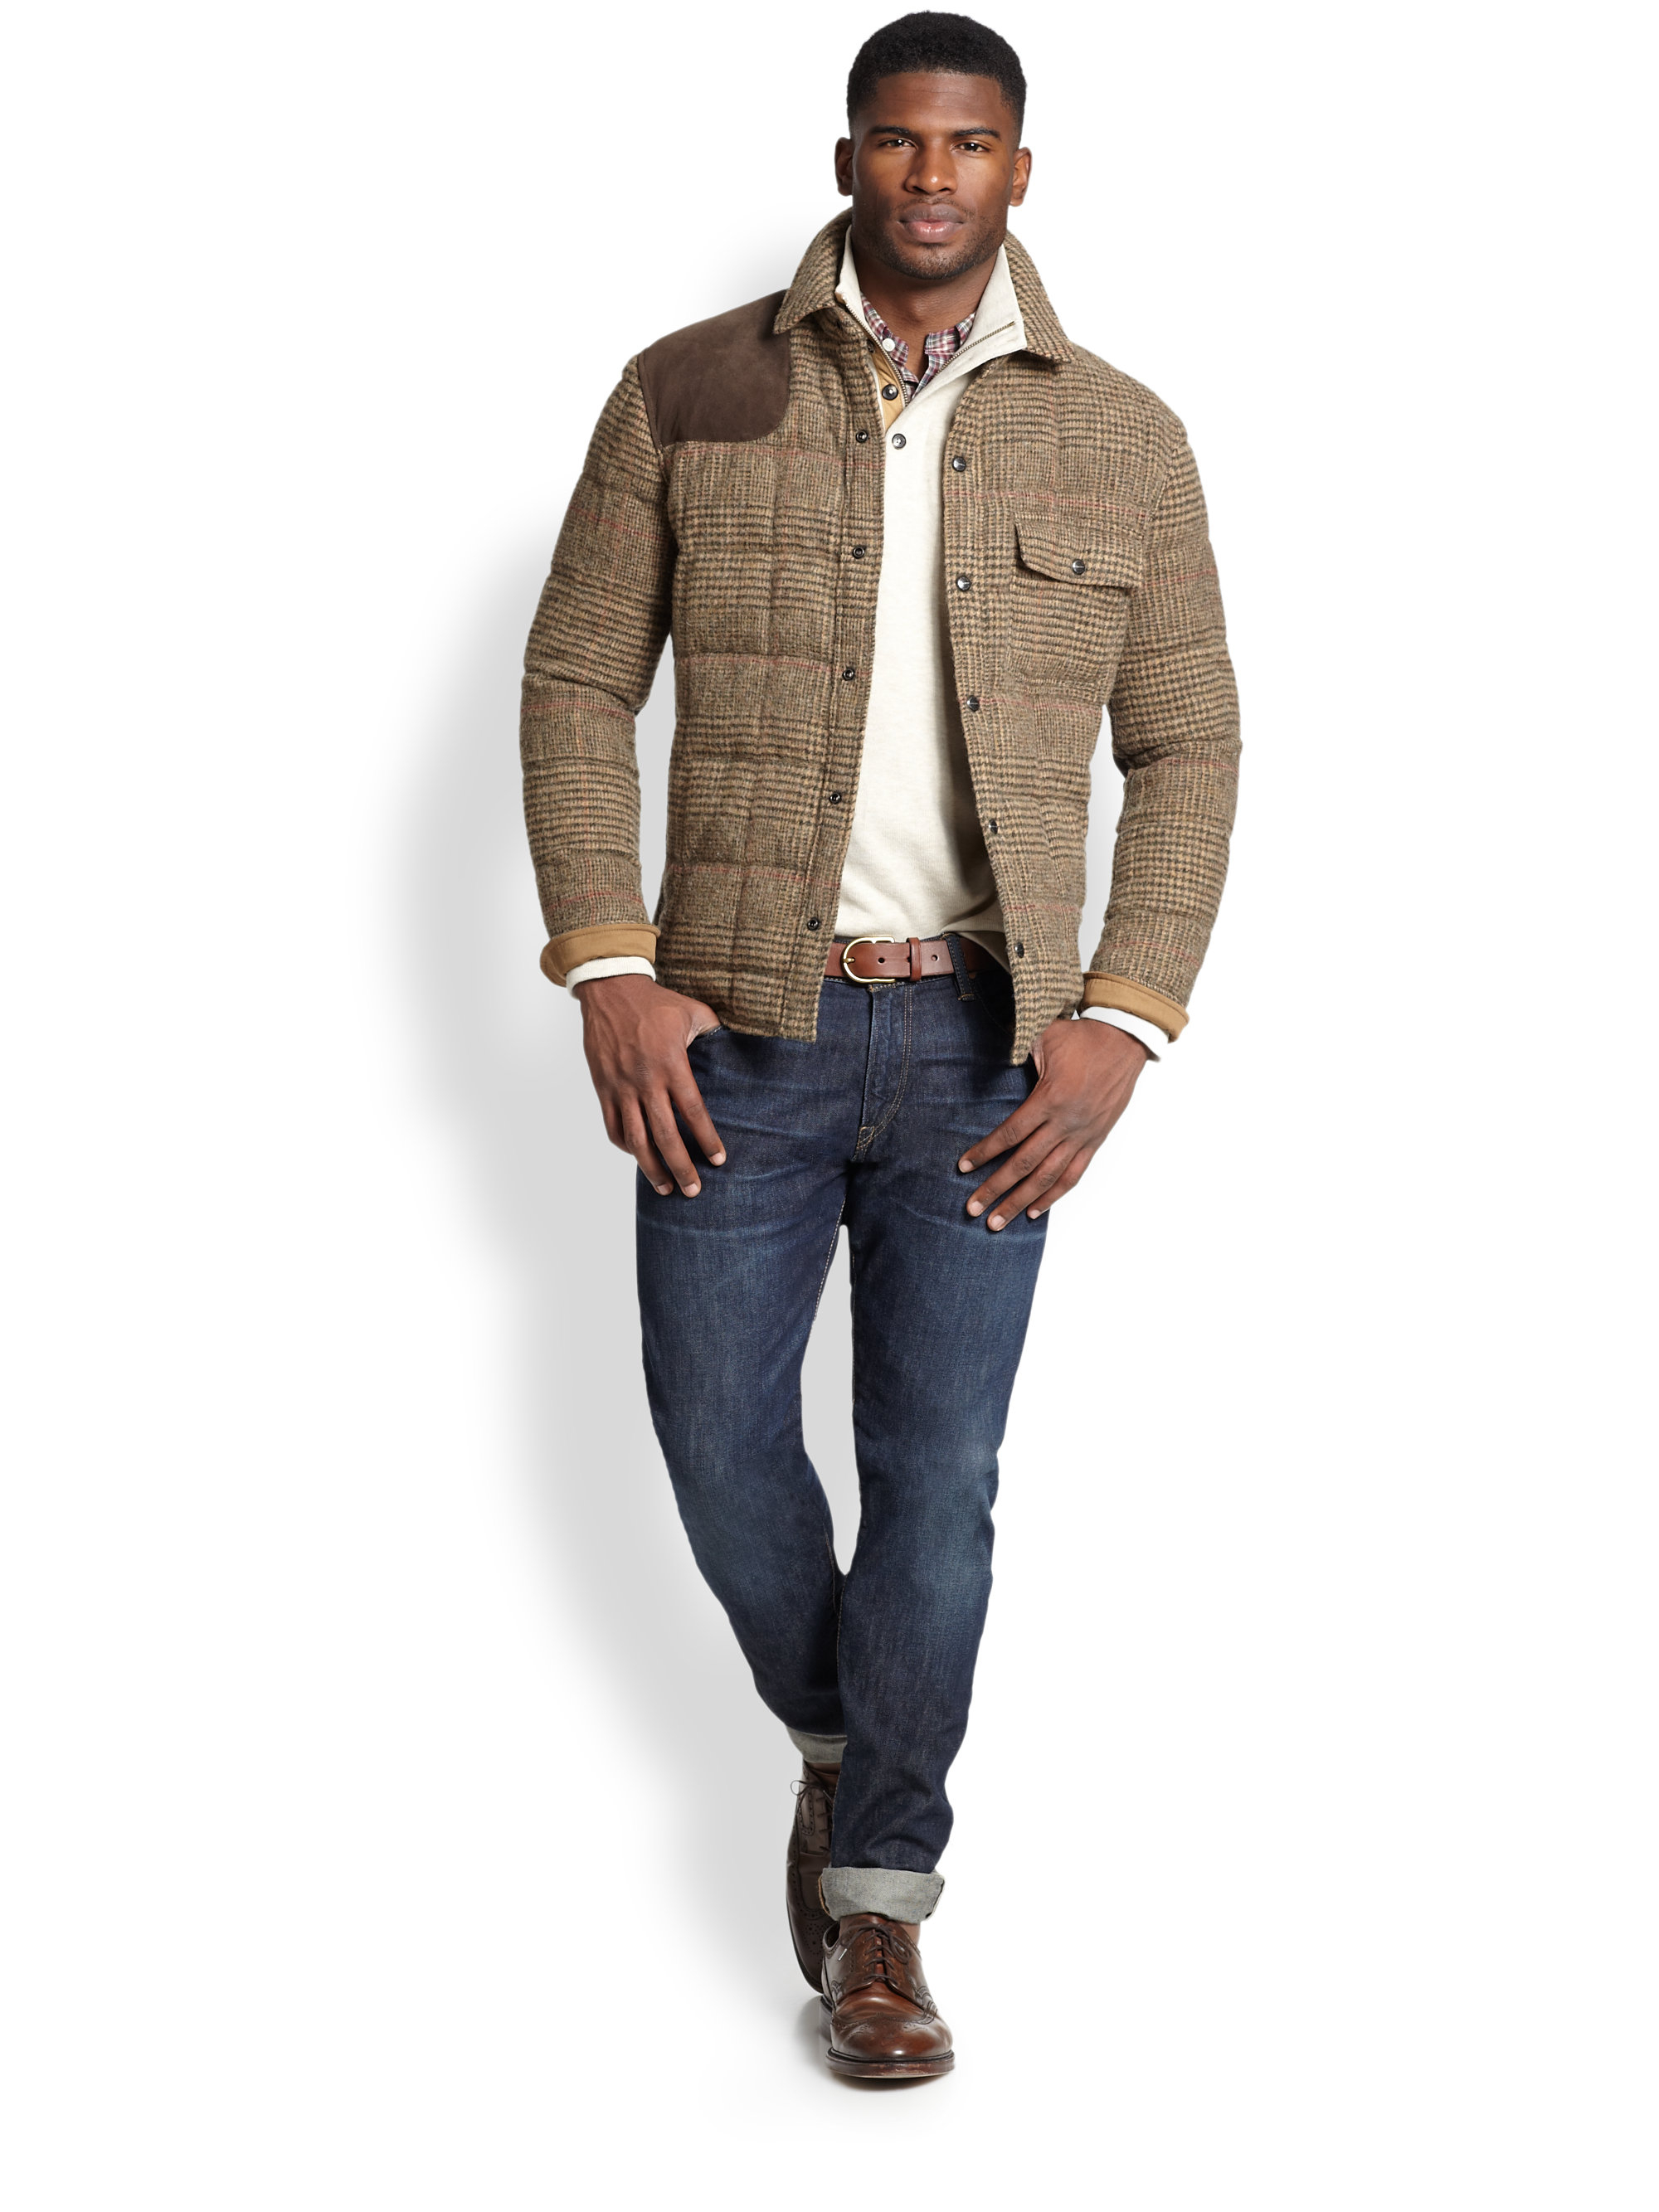 Polo Ralph Lauren Wilmont Tweed Shirt Jacket in Brown for Men - Lyst